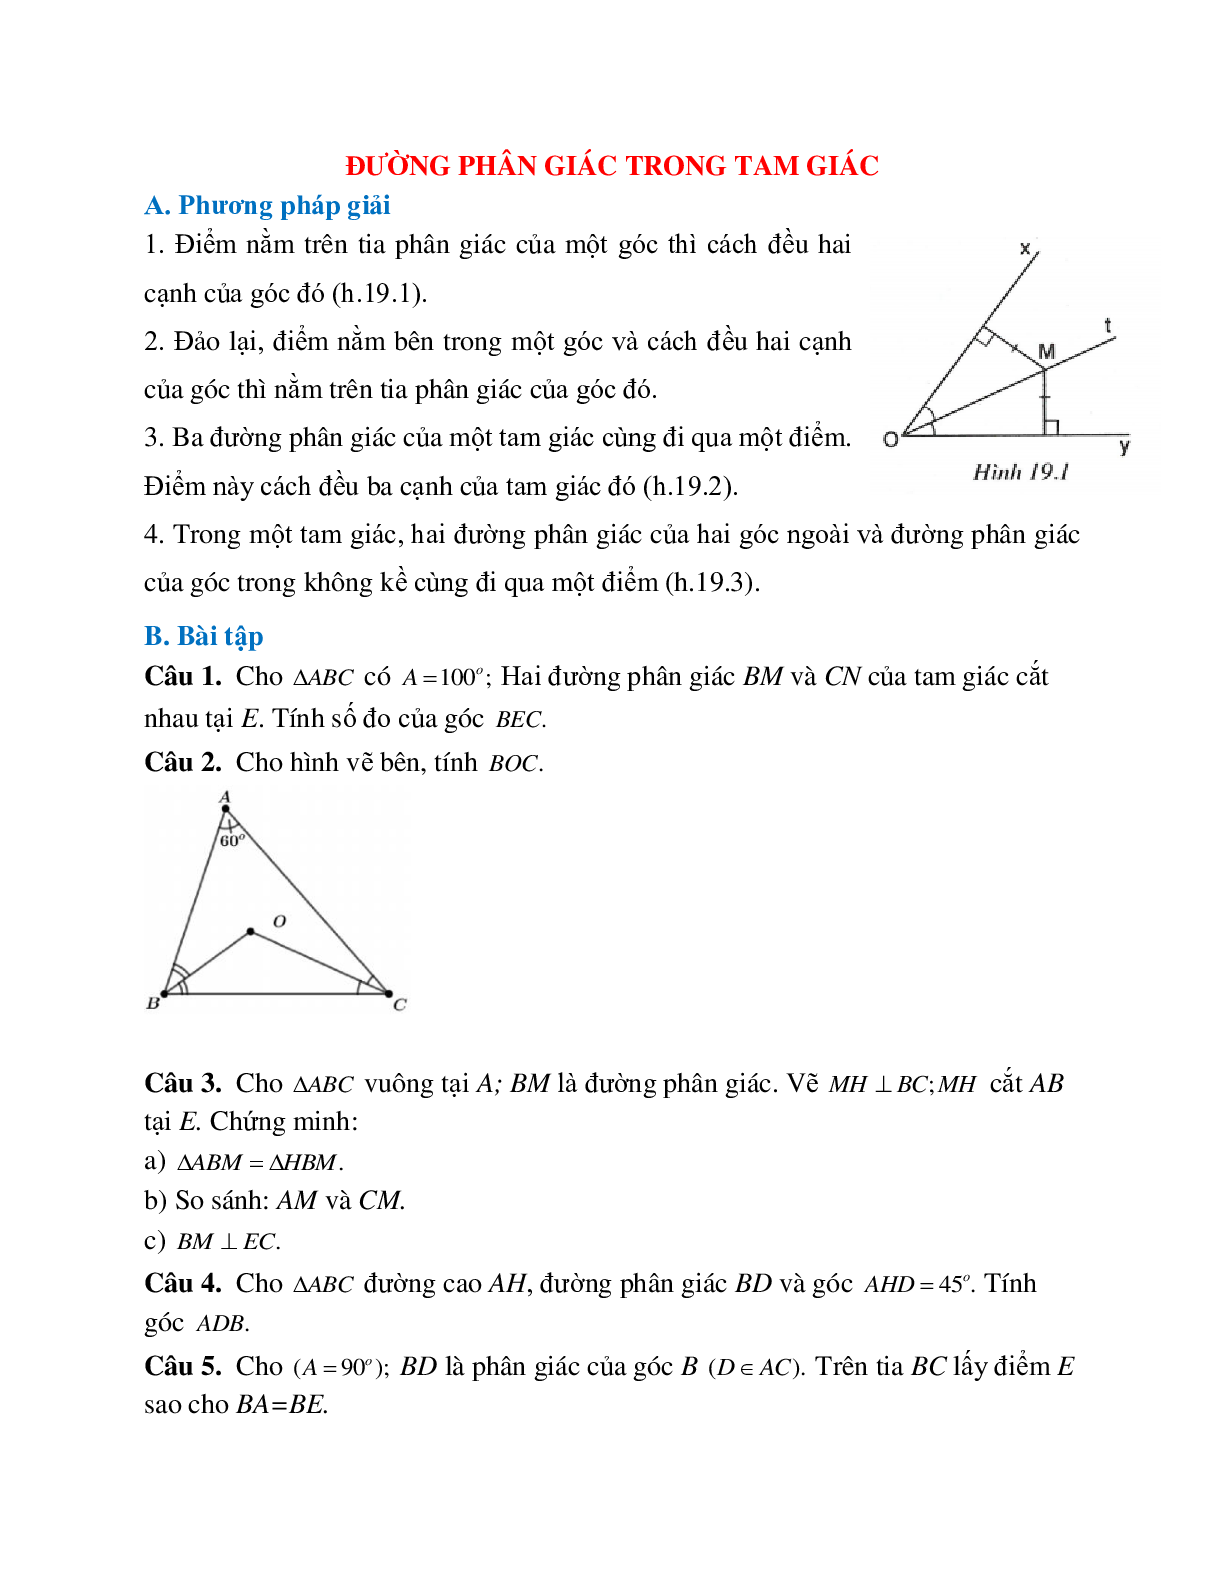 Phương pháp giải và bài xích luyện về Đường phân giác vô tam giác lựa chọn lọc